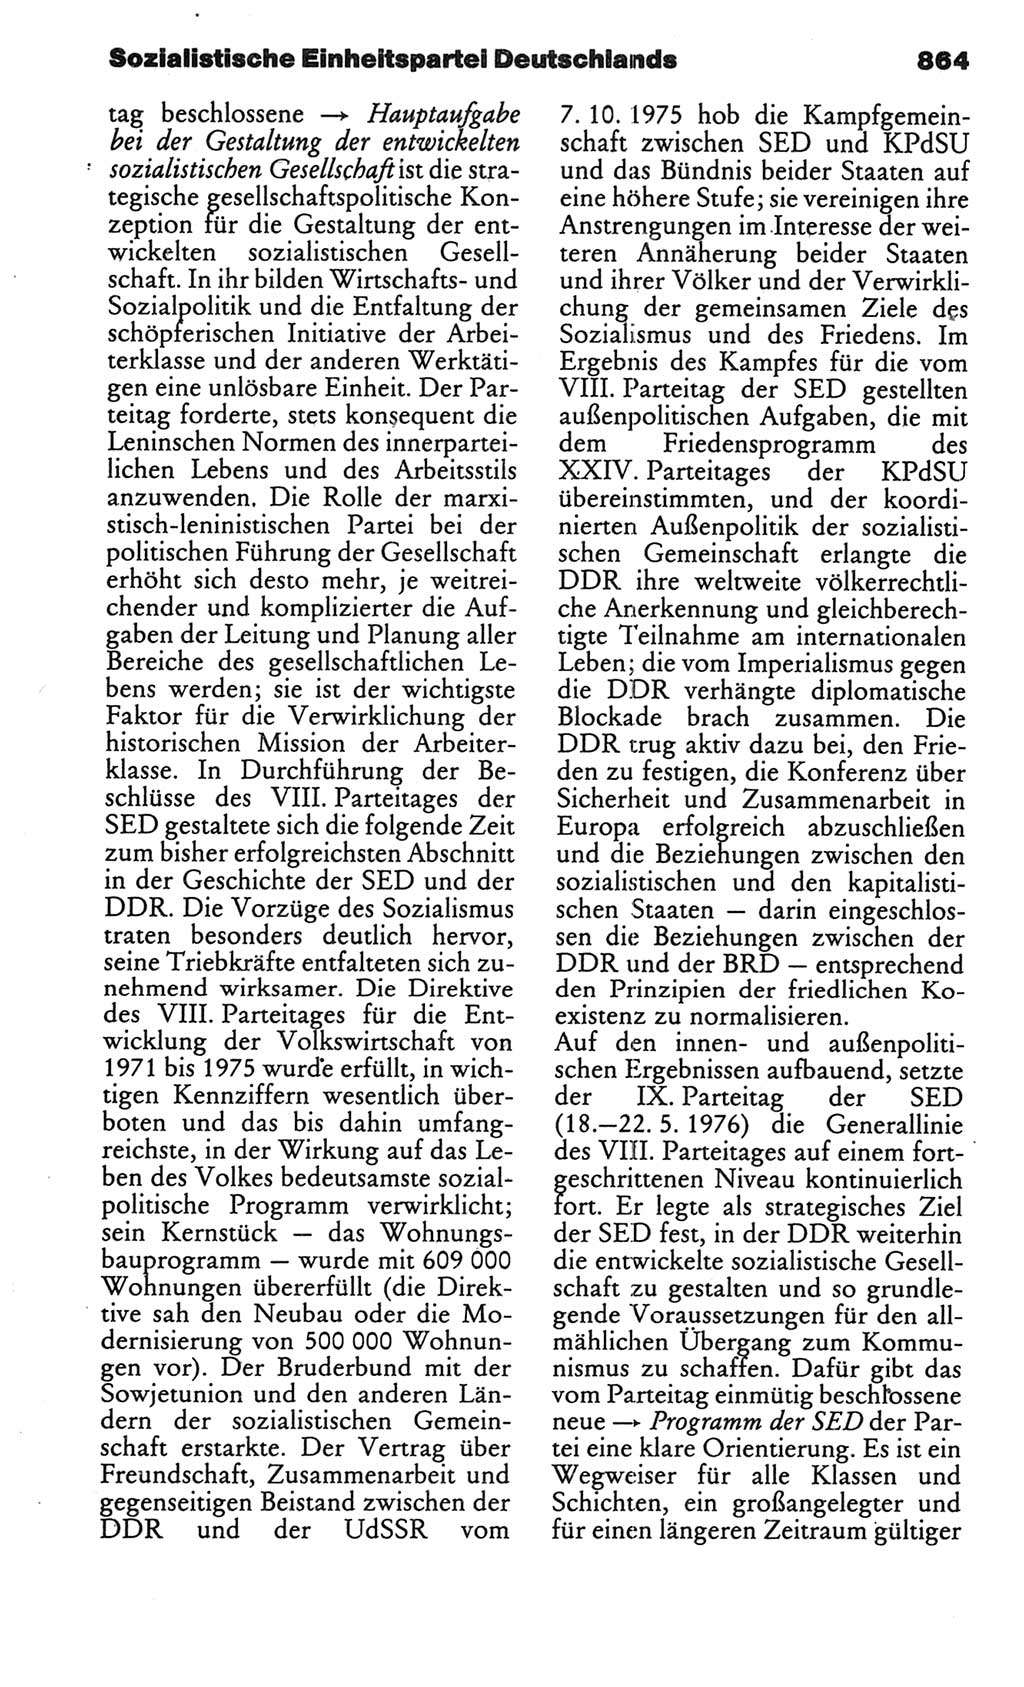 Kleines politisches Wörterbuch [Deutsche Demokratische Republik (DDR)] 1986, Seite 864 (Kl. pol. Wb. DDR 1986, S. 864)